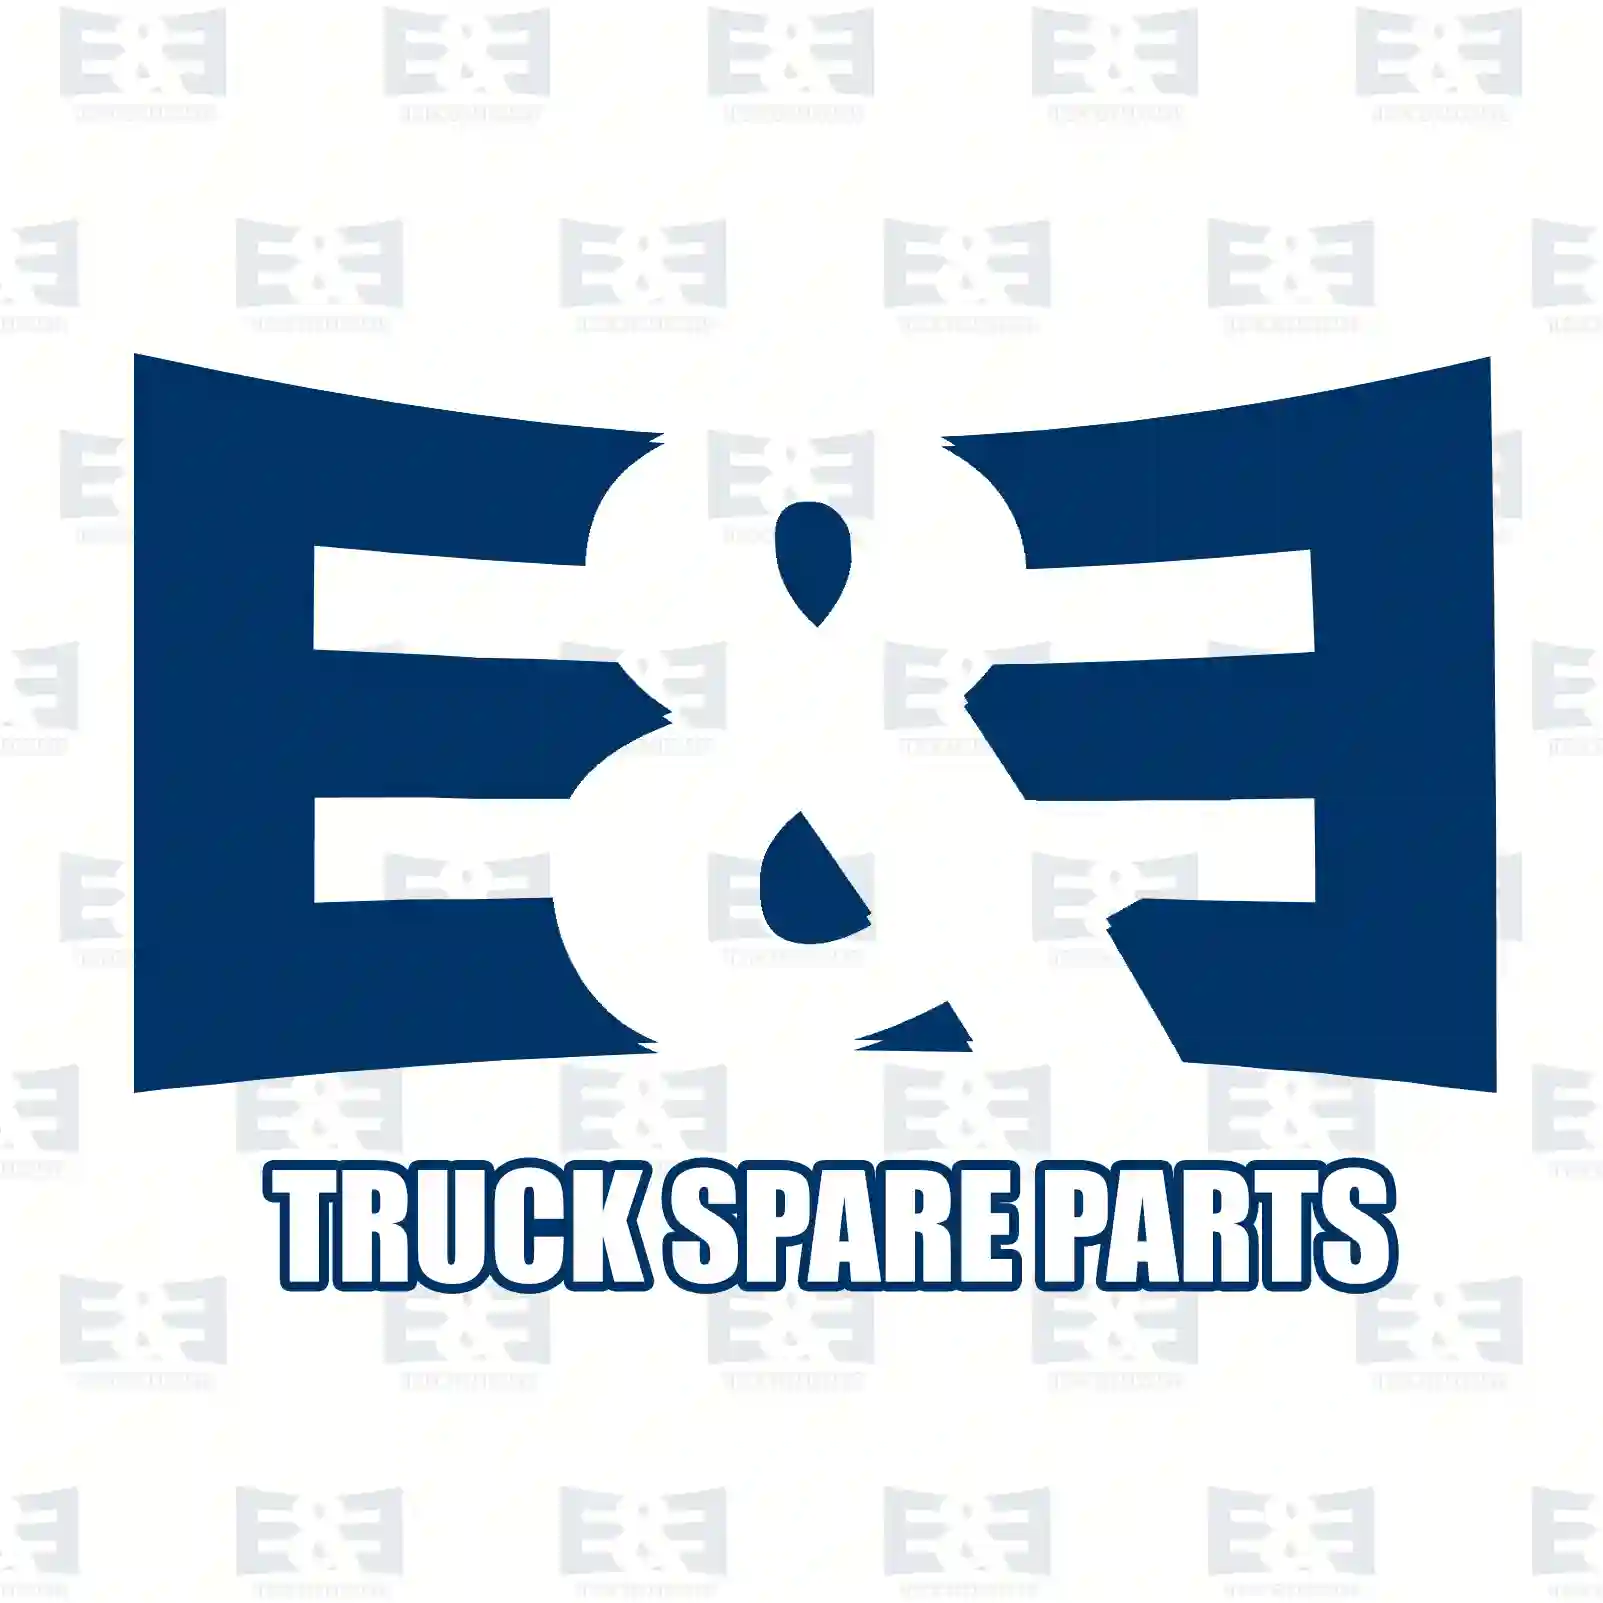 Step well case, right, 2E2292270, 6496600106, 64966001067329, 64966001069135 ||  2E2292270 E&E Truck Spare Parts | Truck Spare Parts, Auotomotive Spare Parts Step well case, right, 2E2292270, 6496600106, 64966001067329, 64966001069135 ||  2E2292270 E&E Truck Spare Parts | Truck Spare Parts, Auotomotive Spare Parts